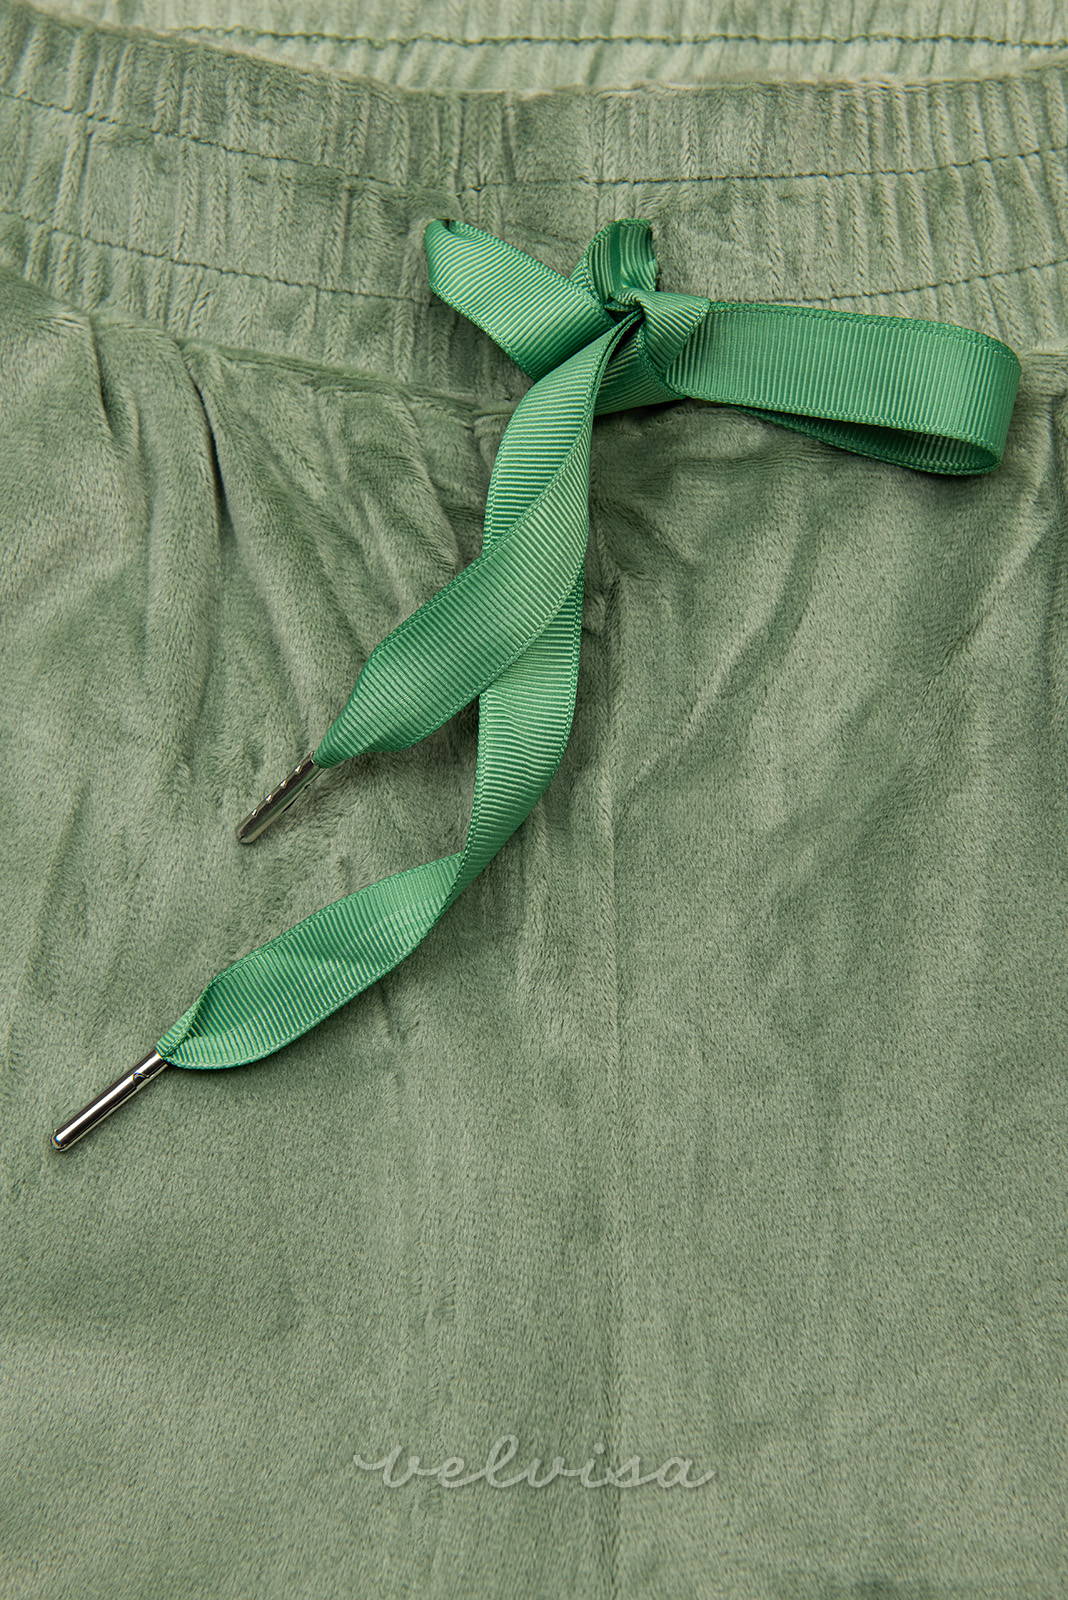 Pantaloni della tuta in velluto verdi